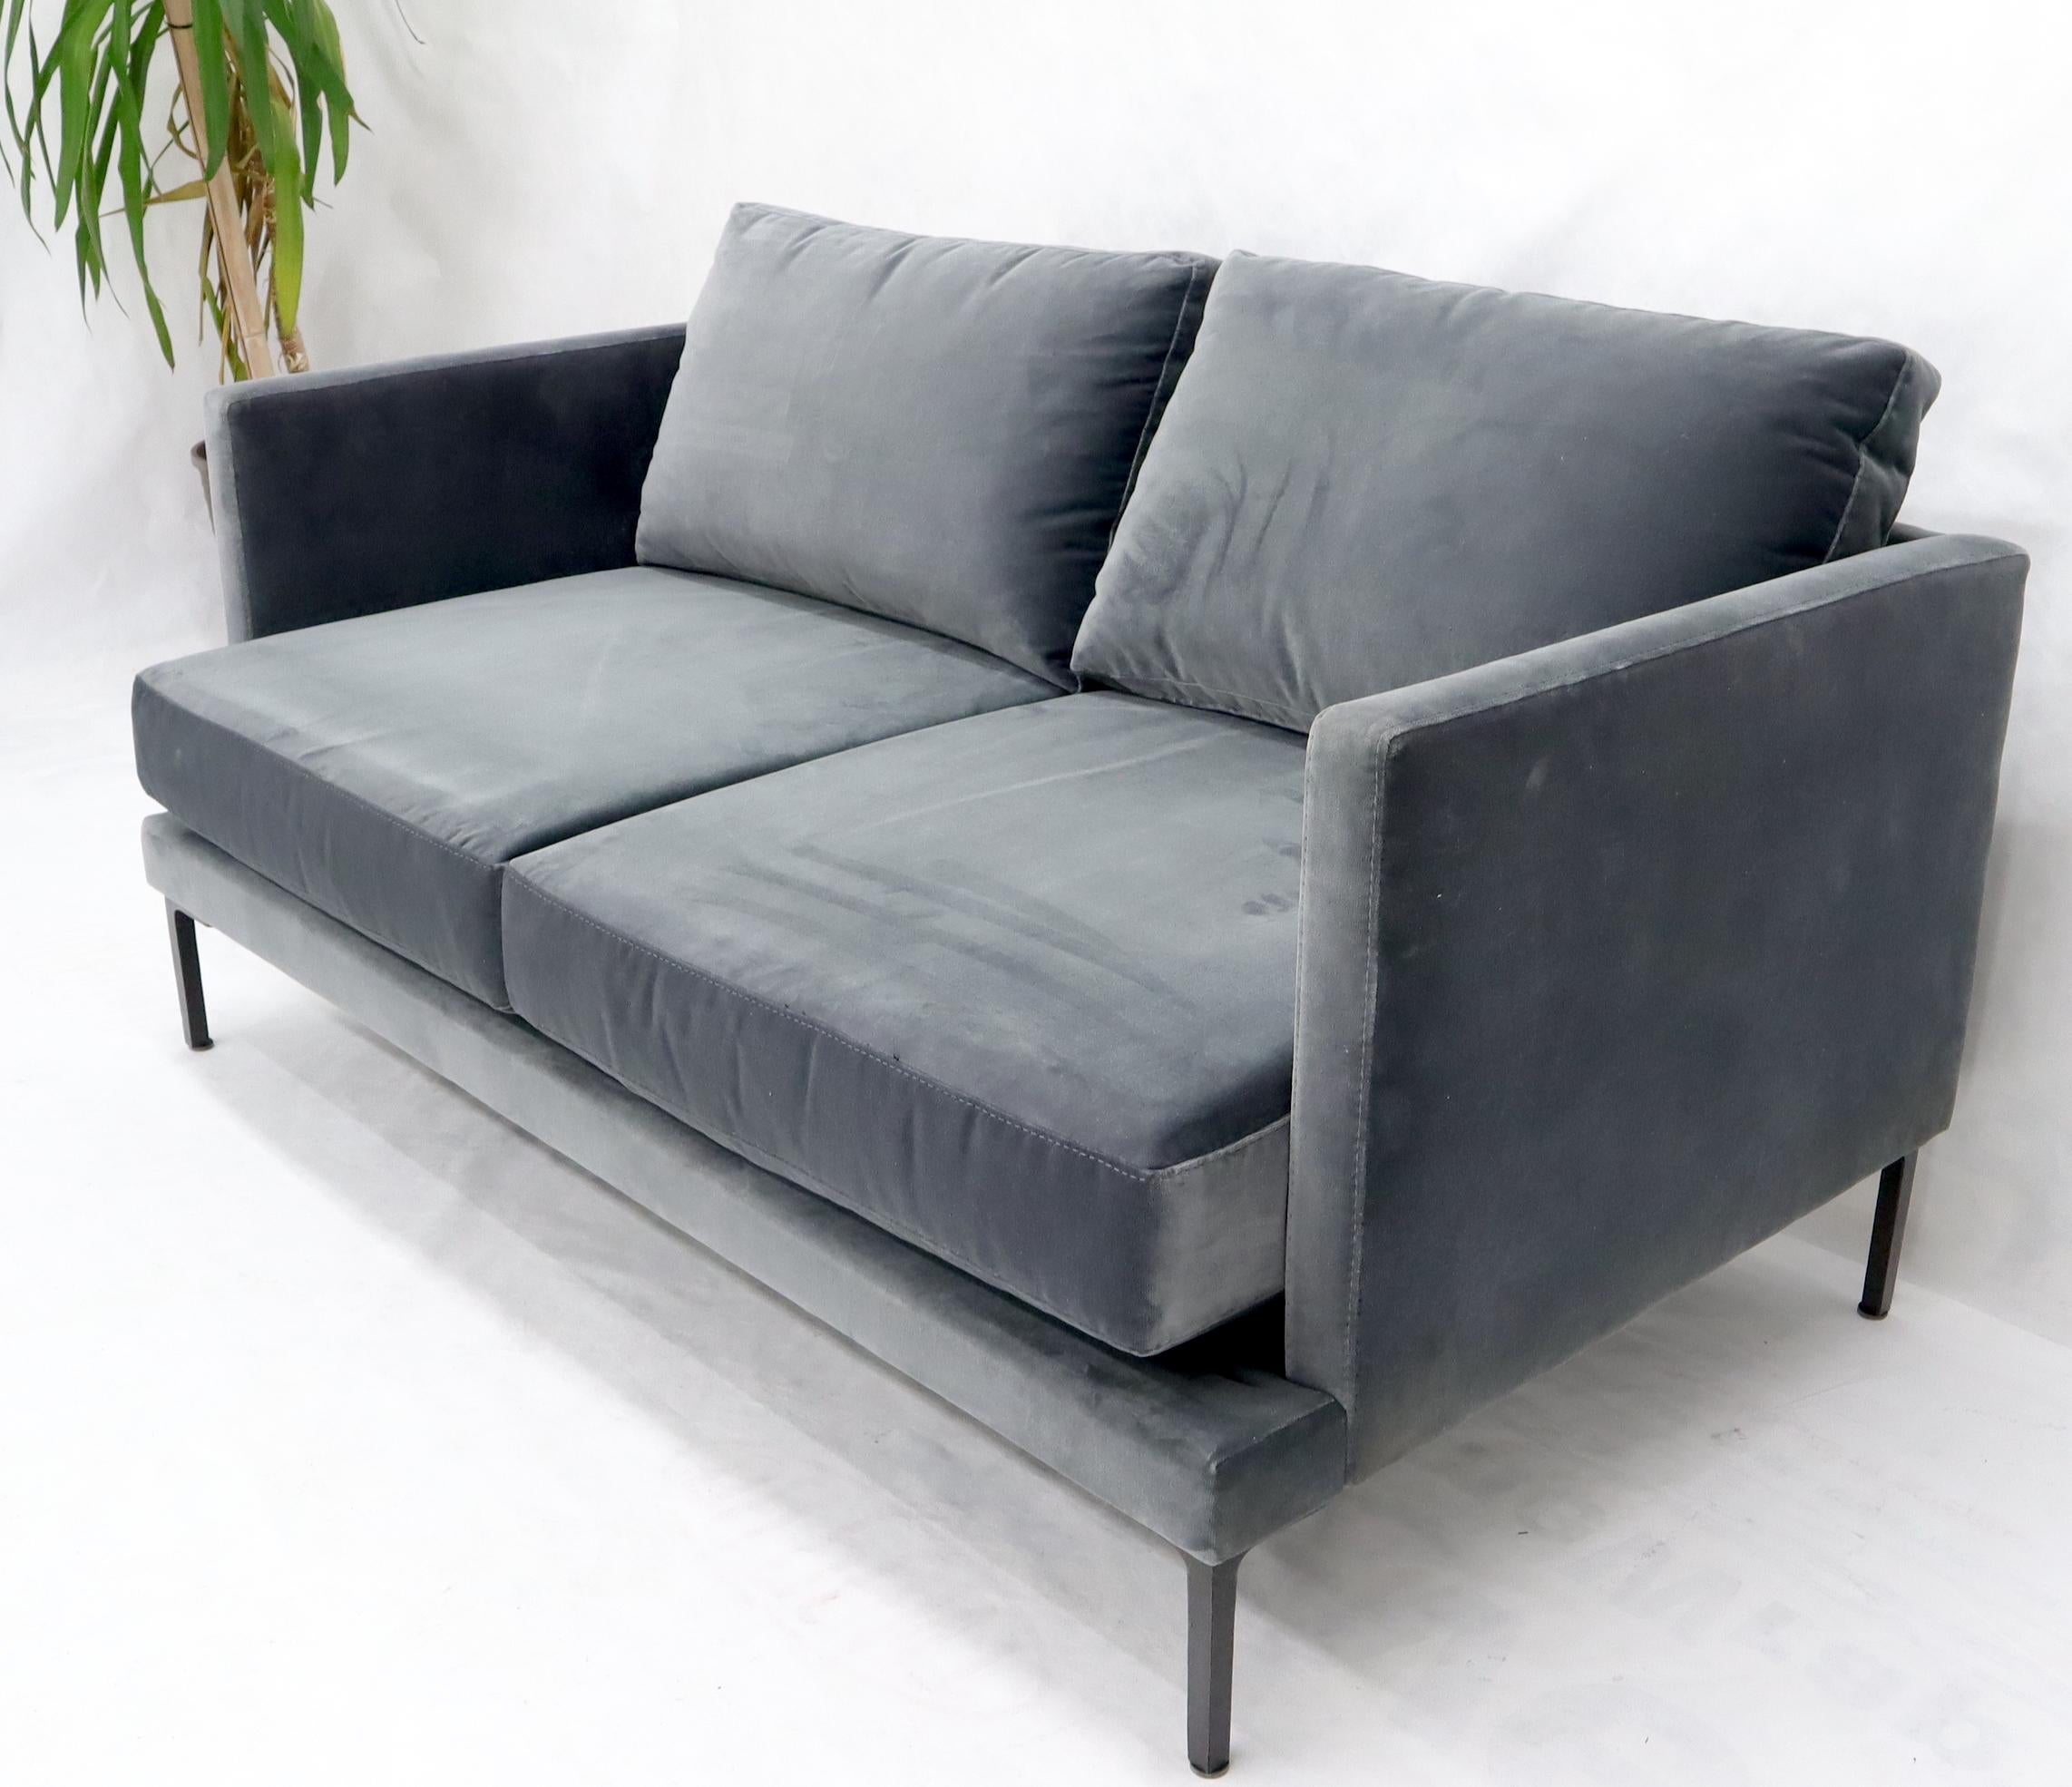 Mid-Century Modern style grey velvet upholstery sofa loveseat.